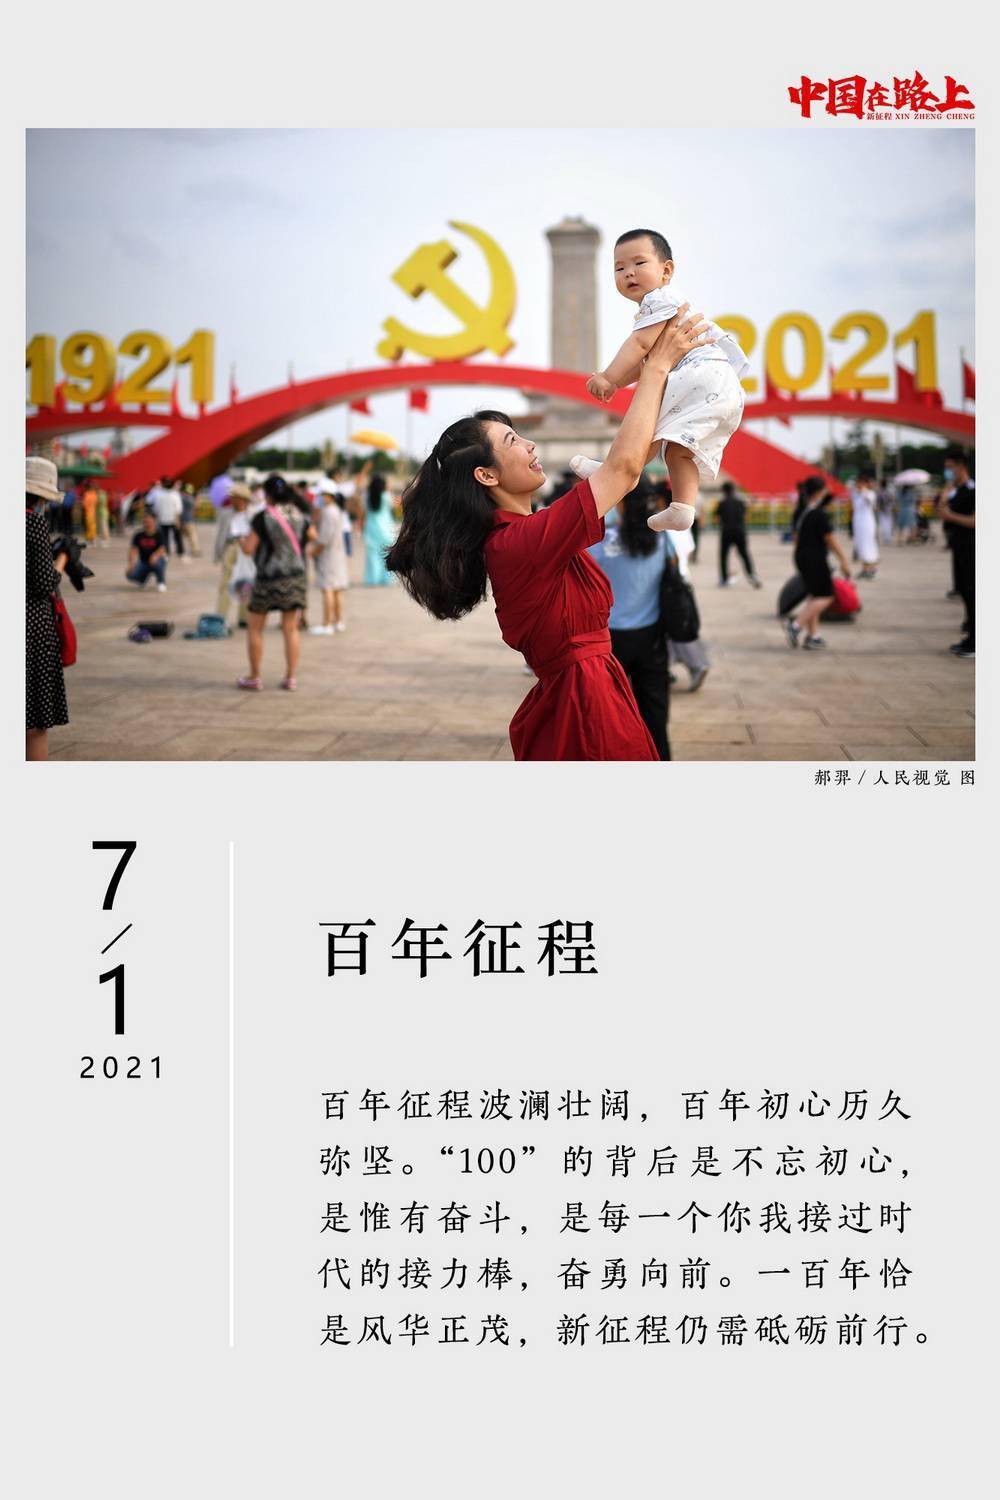 征程|2021年度图片报道·新征程｜31张日历记录：中国在路上